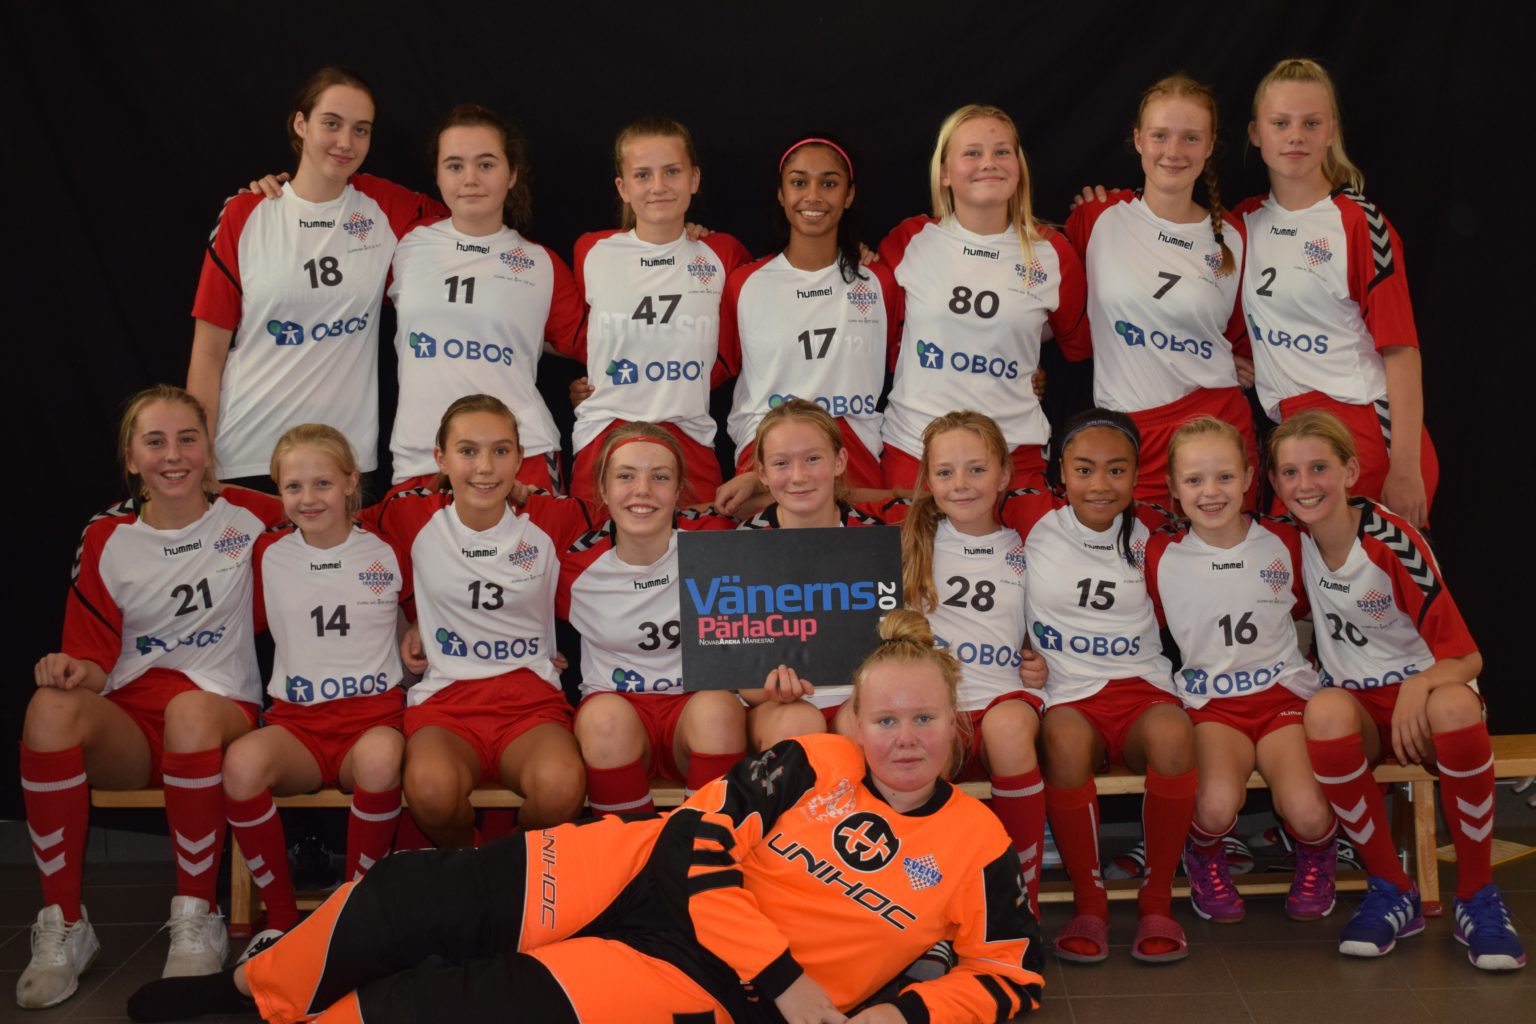 Sveivas J14/15 ble invitert til å delta, som eneste norske lag, på «Vänerns Pärla Cup 2018». Dette var en mulighet for jentene til å møte nye lag og få god motstand som en oppkjøring til sesongen, og vi stilte med 3 fulle rekker med jenter født ’03 til ‘06.